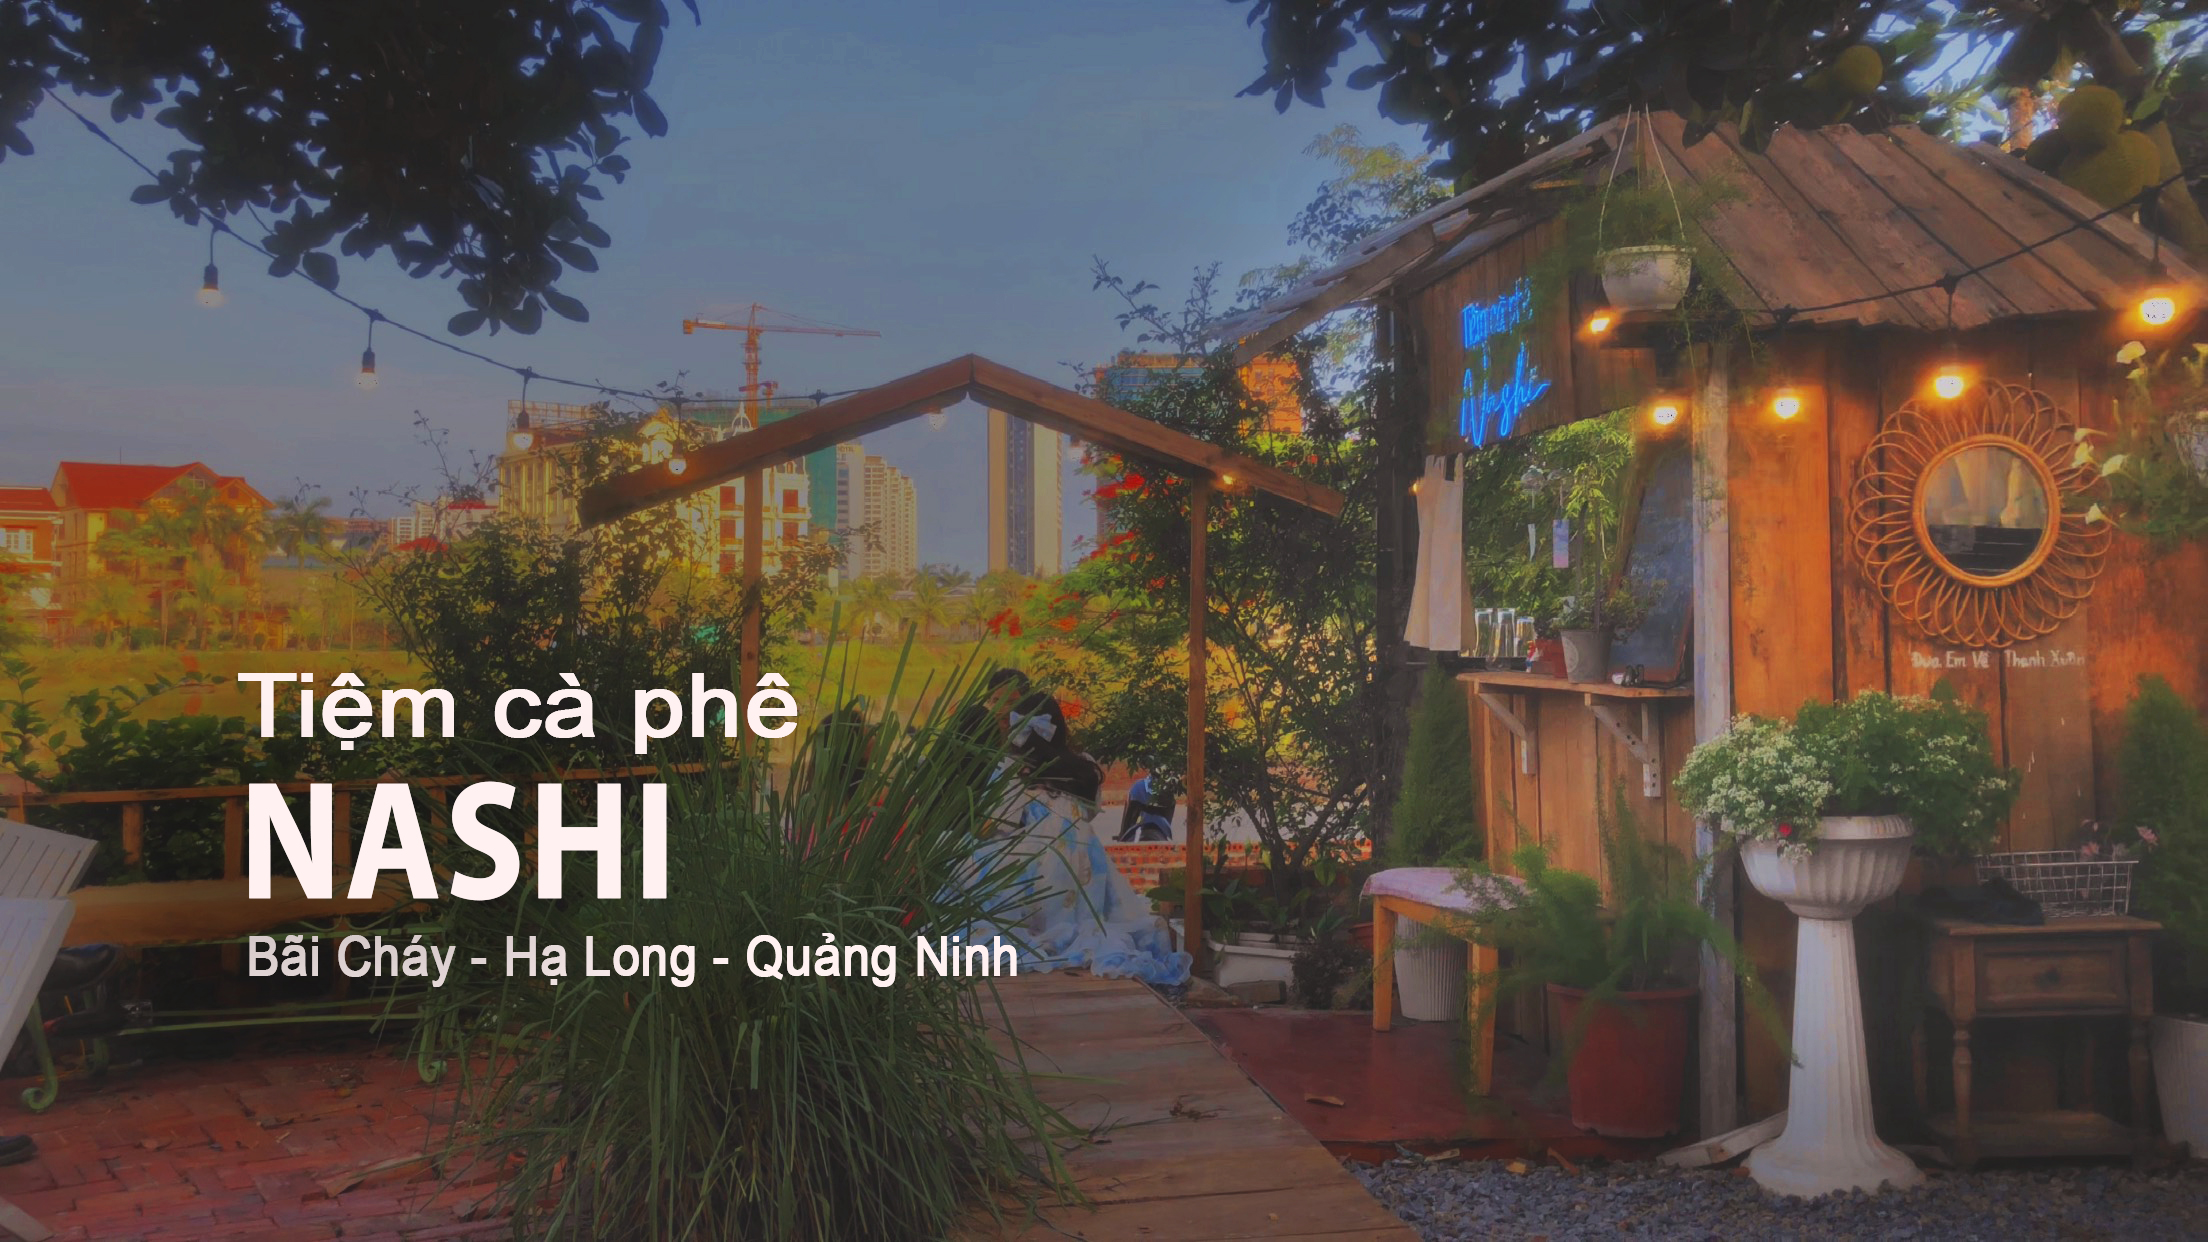 Khám phá phong cách thiết kế và không gian tiệm cà phê NASHI ở Bãi Cháy - Hạ Long - Quảng Ninh 2